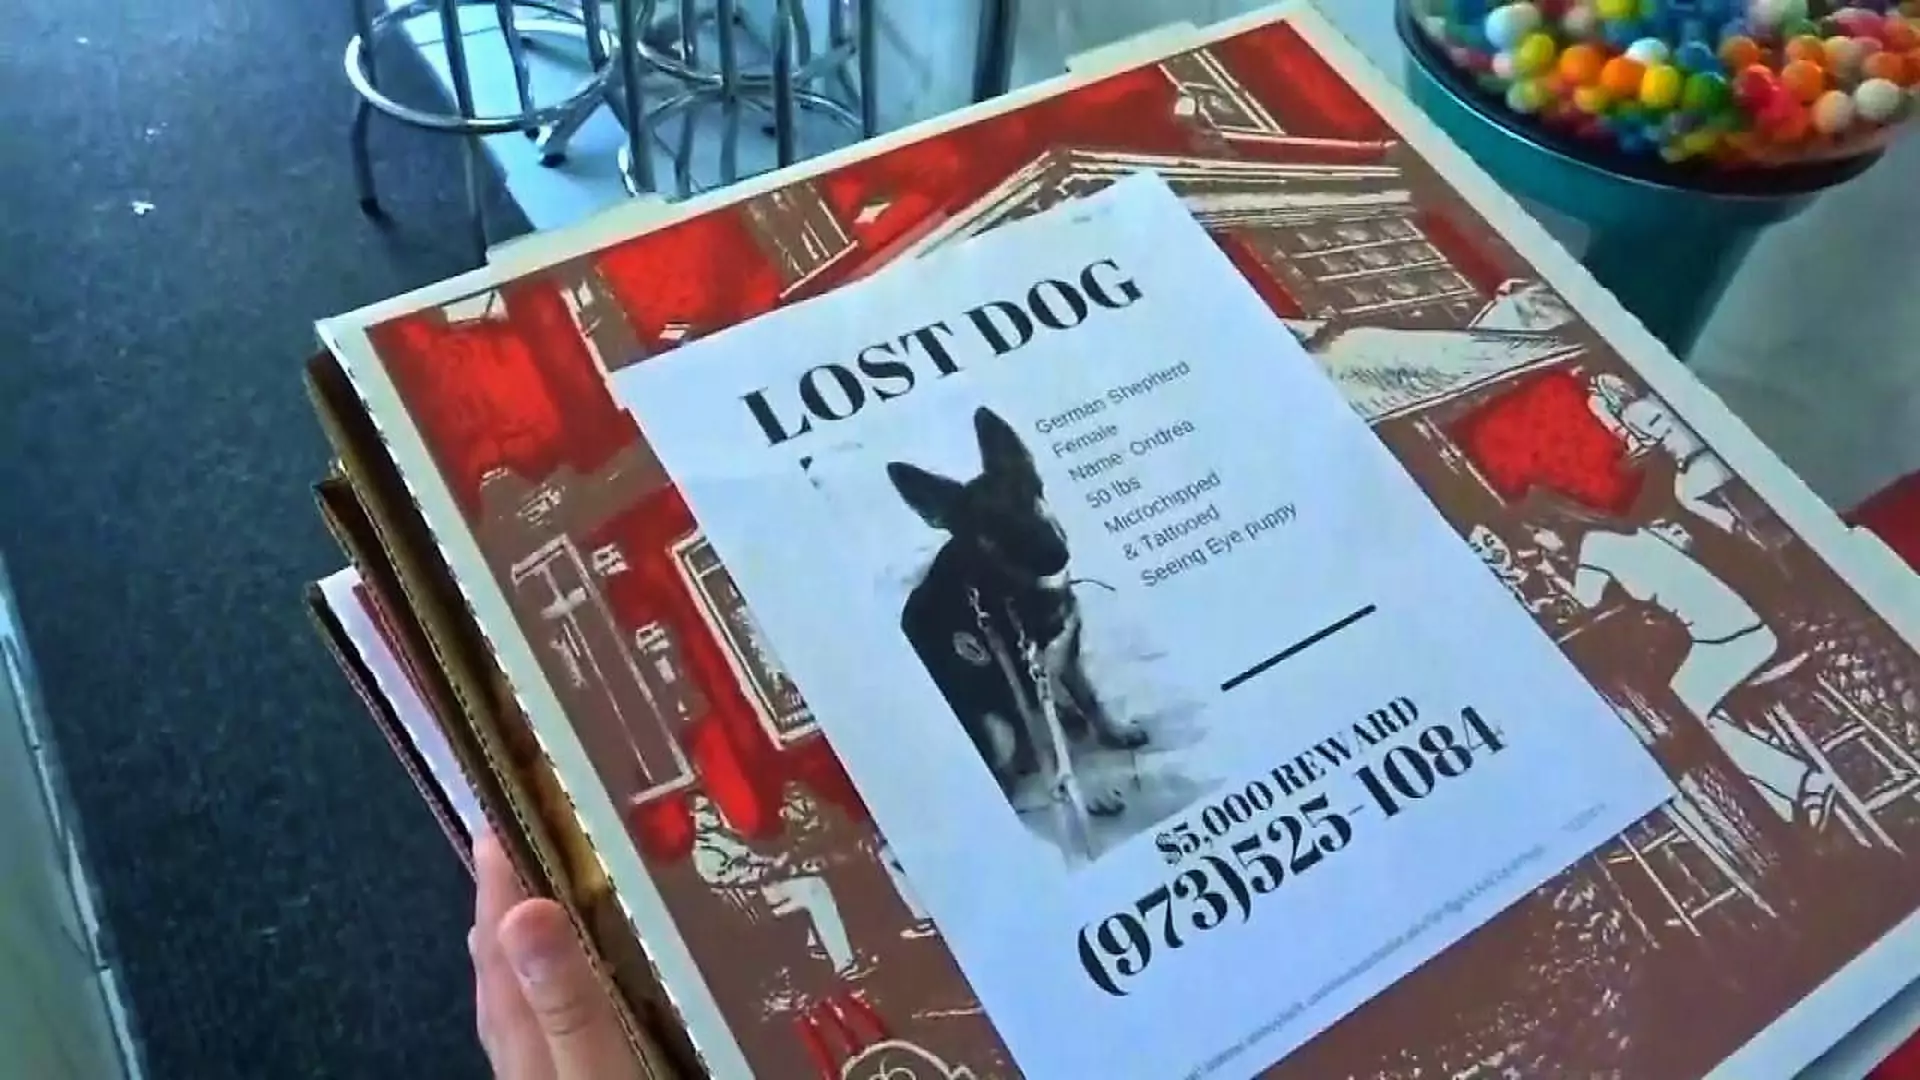 Zdjęcia zaginionych zwierząt na pudełkach po pizzy